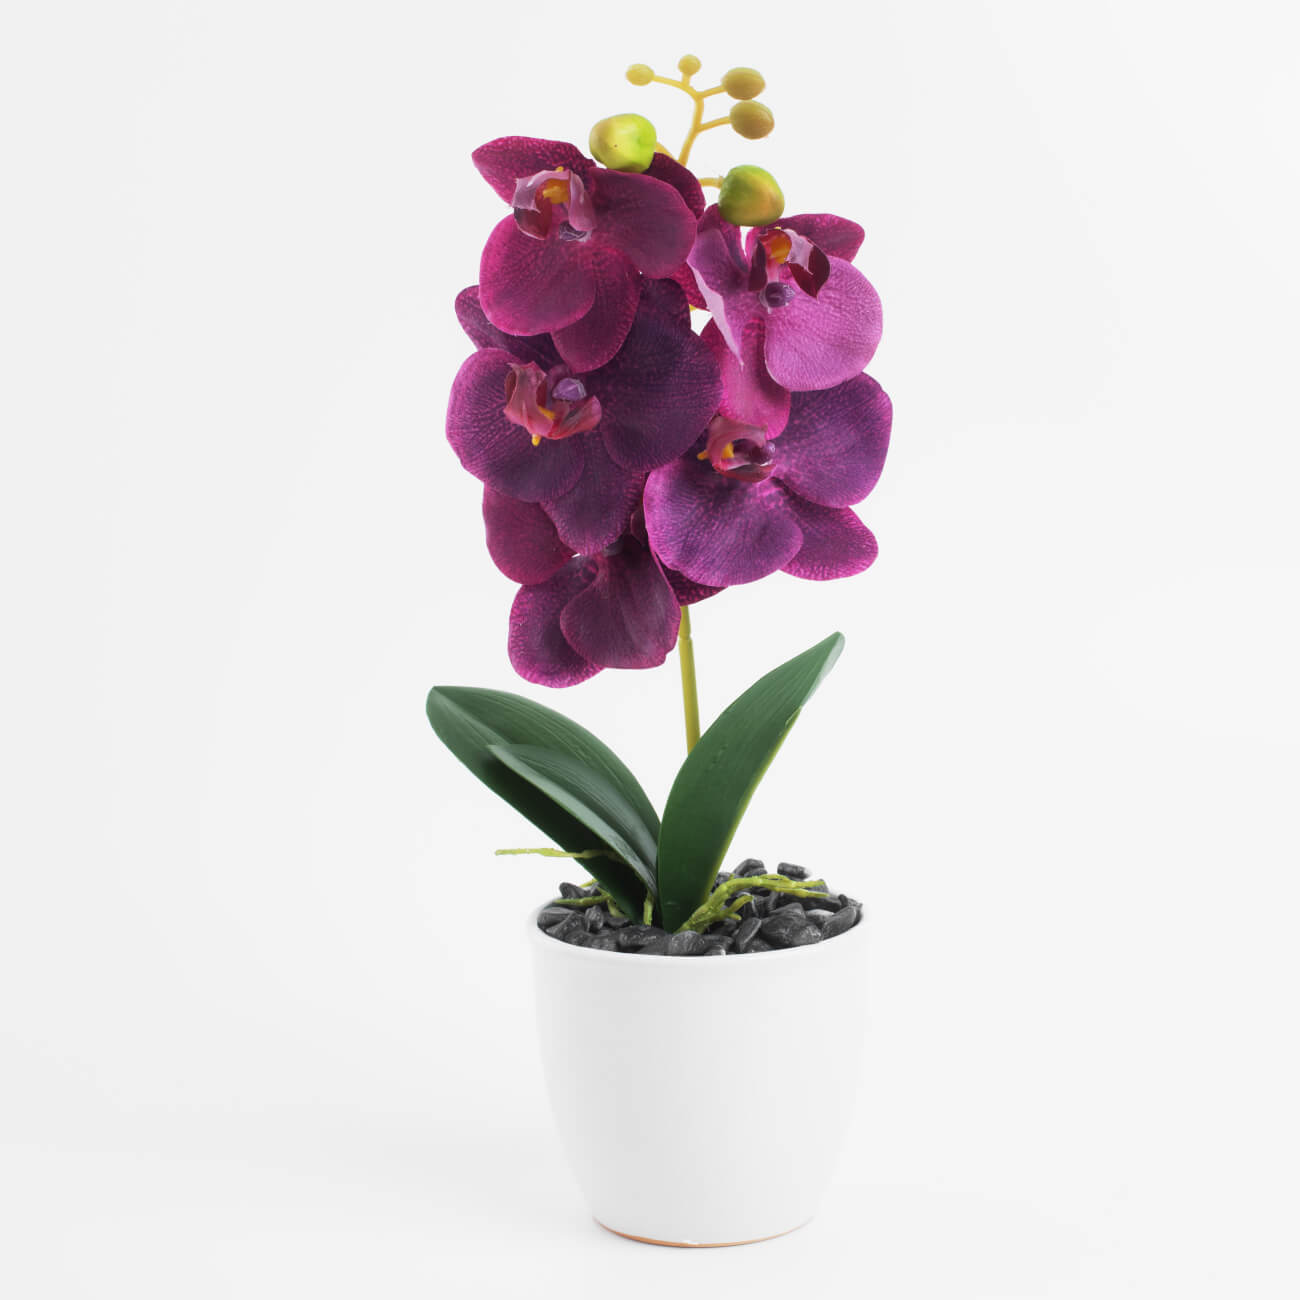 Растение искусственное, 35 см, в горшке, полиэстер/керамика, Розовая орхидея, Orchid растение искусственное 18 см в горшке пластик керамика аглаонема new bunch